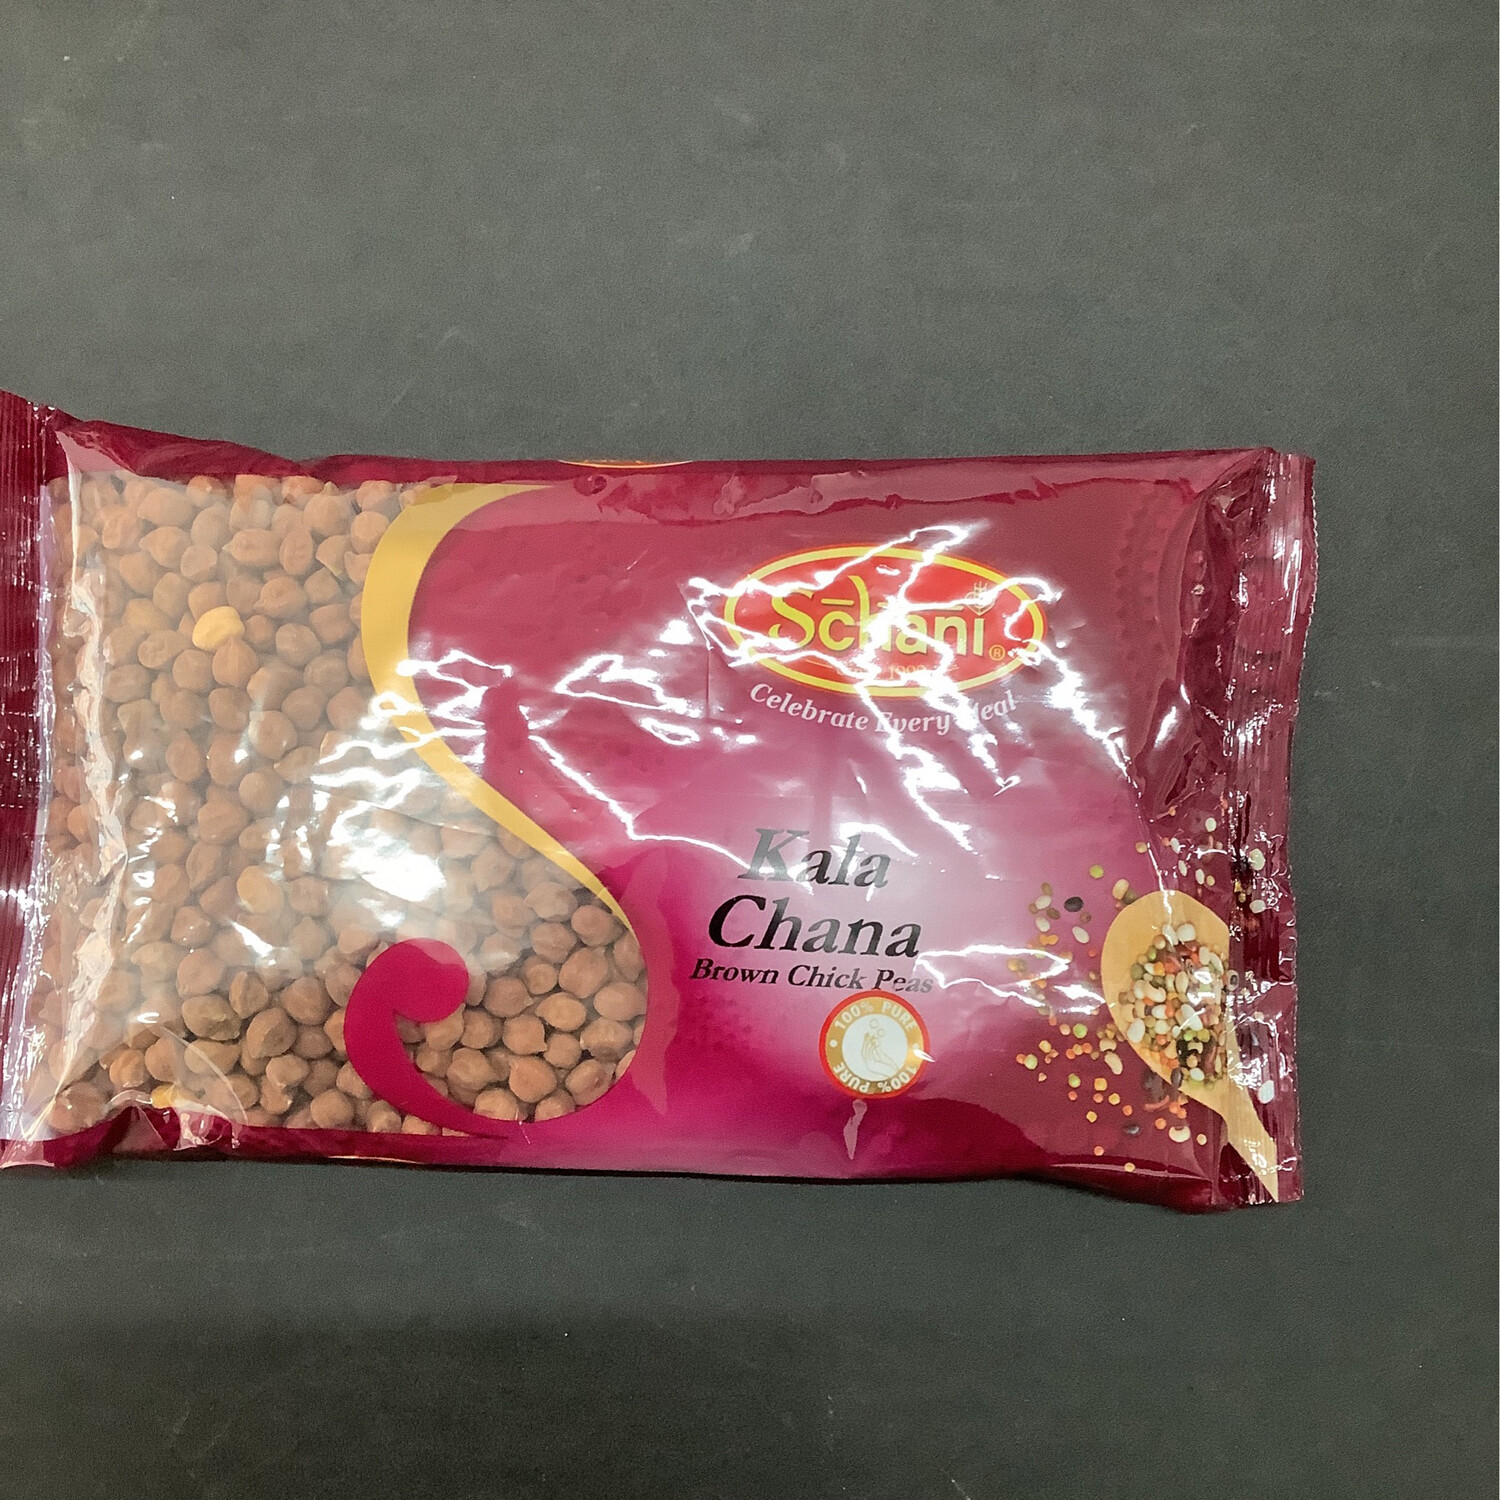 Schani Kala Chana Brown Chick Peas 500g